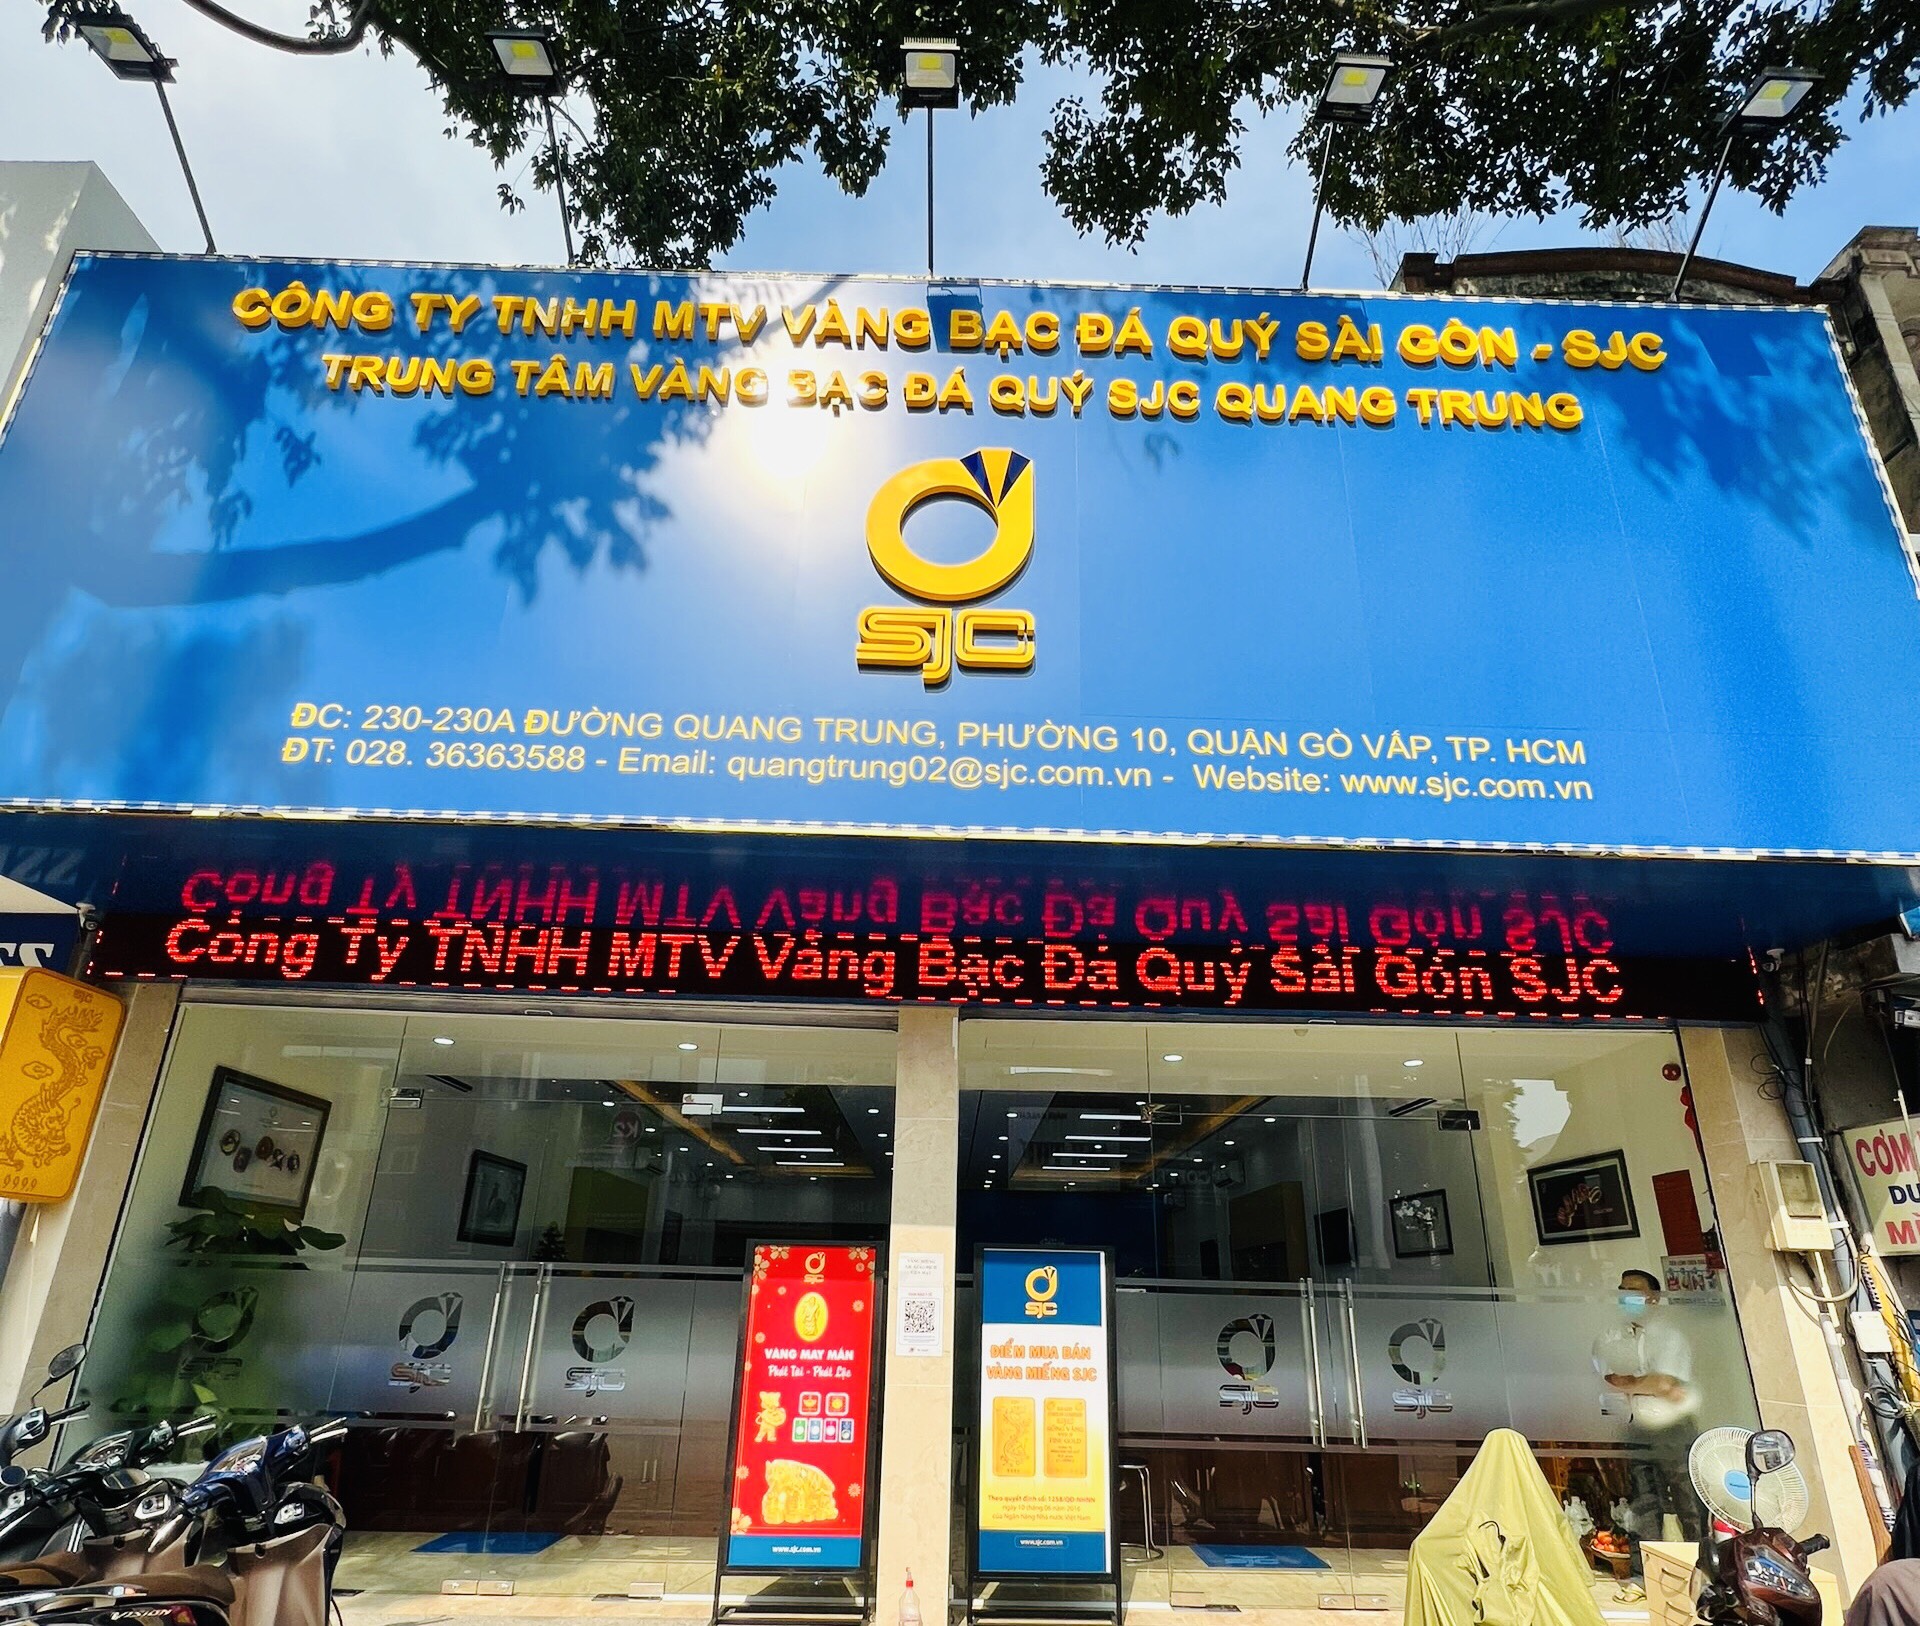 Hình ảnh Công ty Vàng Bạc Đá Quý Sài Gòn – SJC